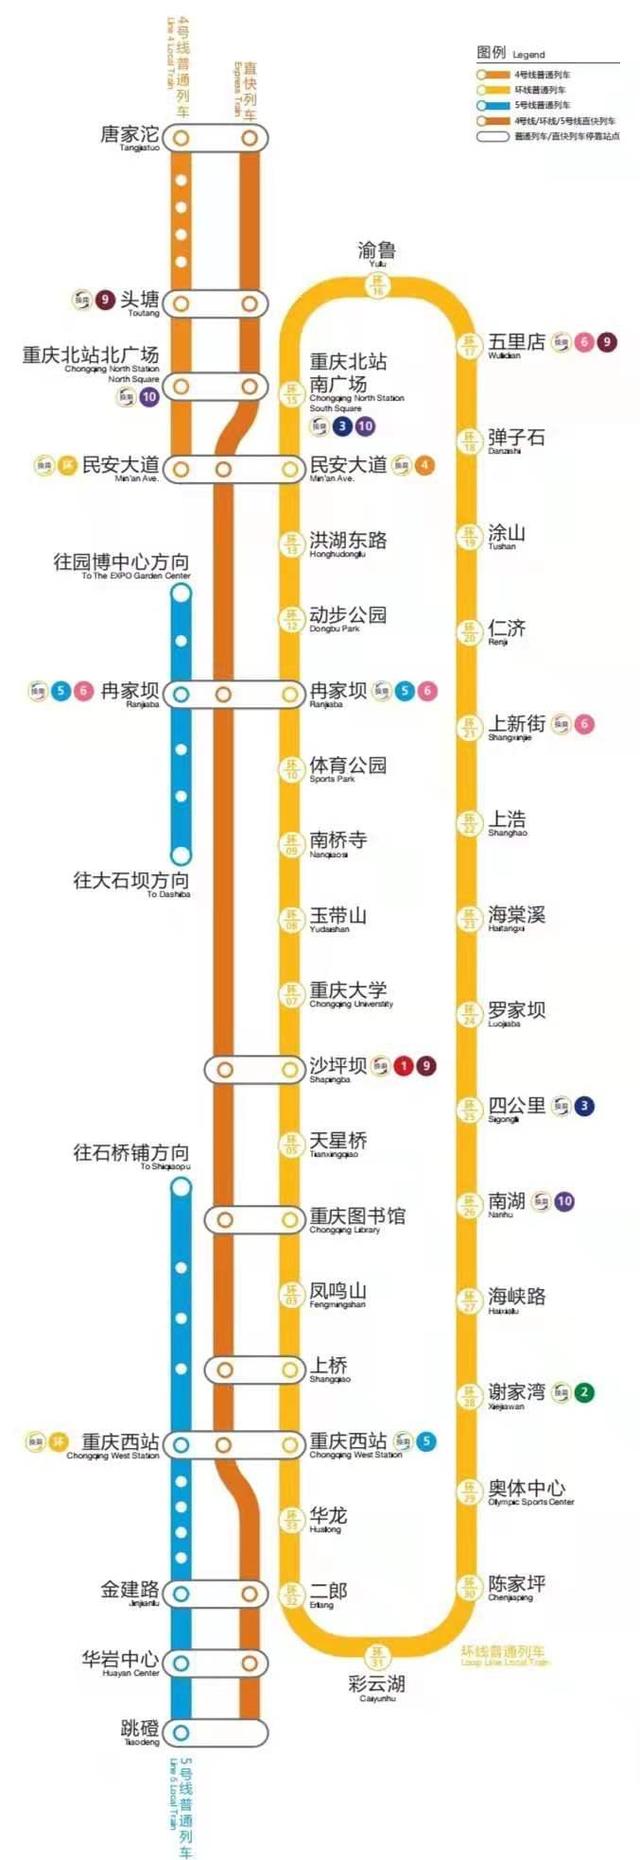 重庆西站内换乘怎么换,重庆西站站内换乘图解(3)